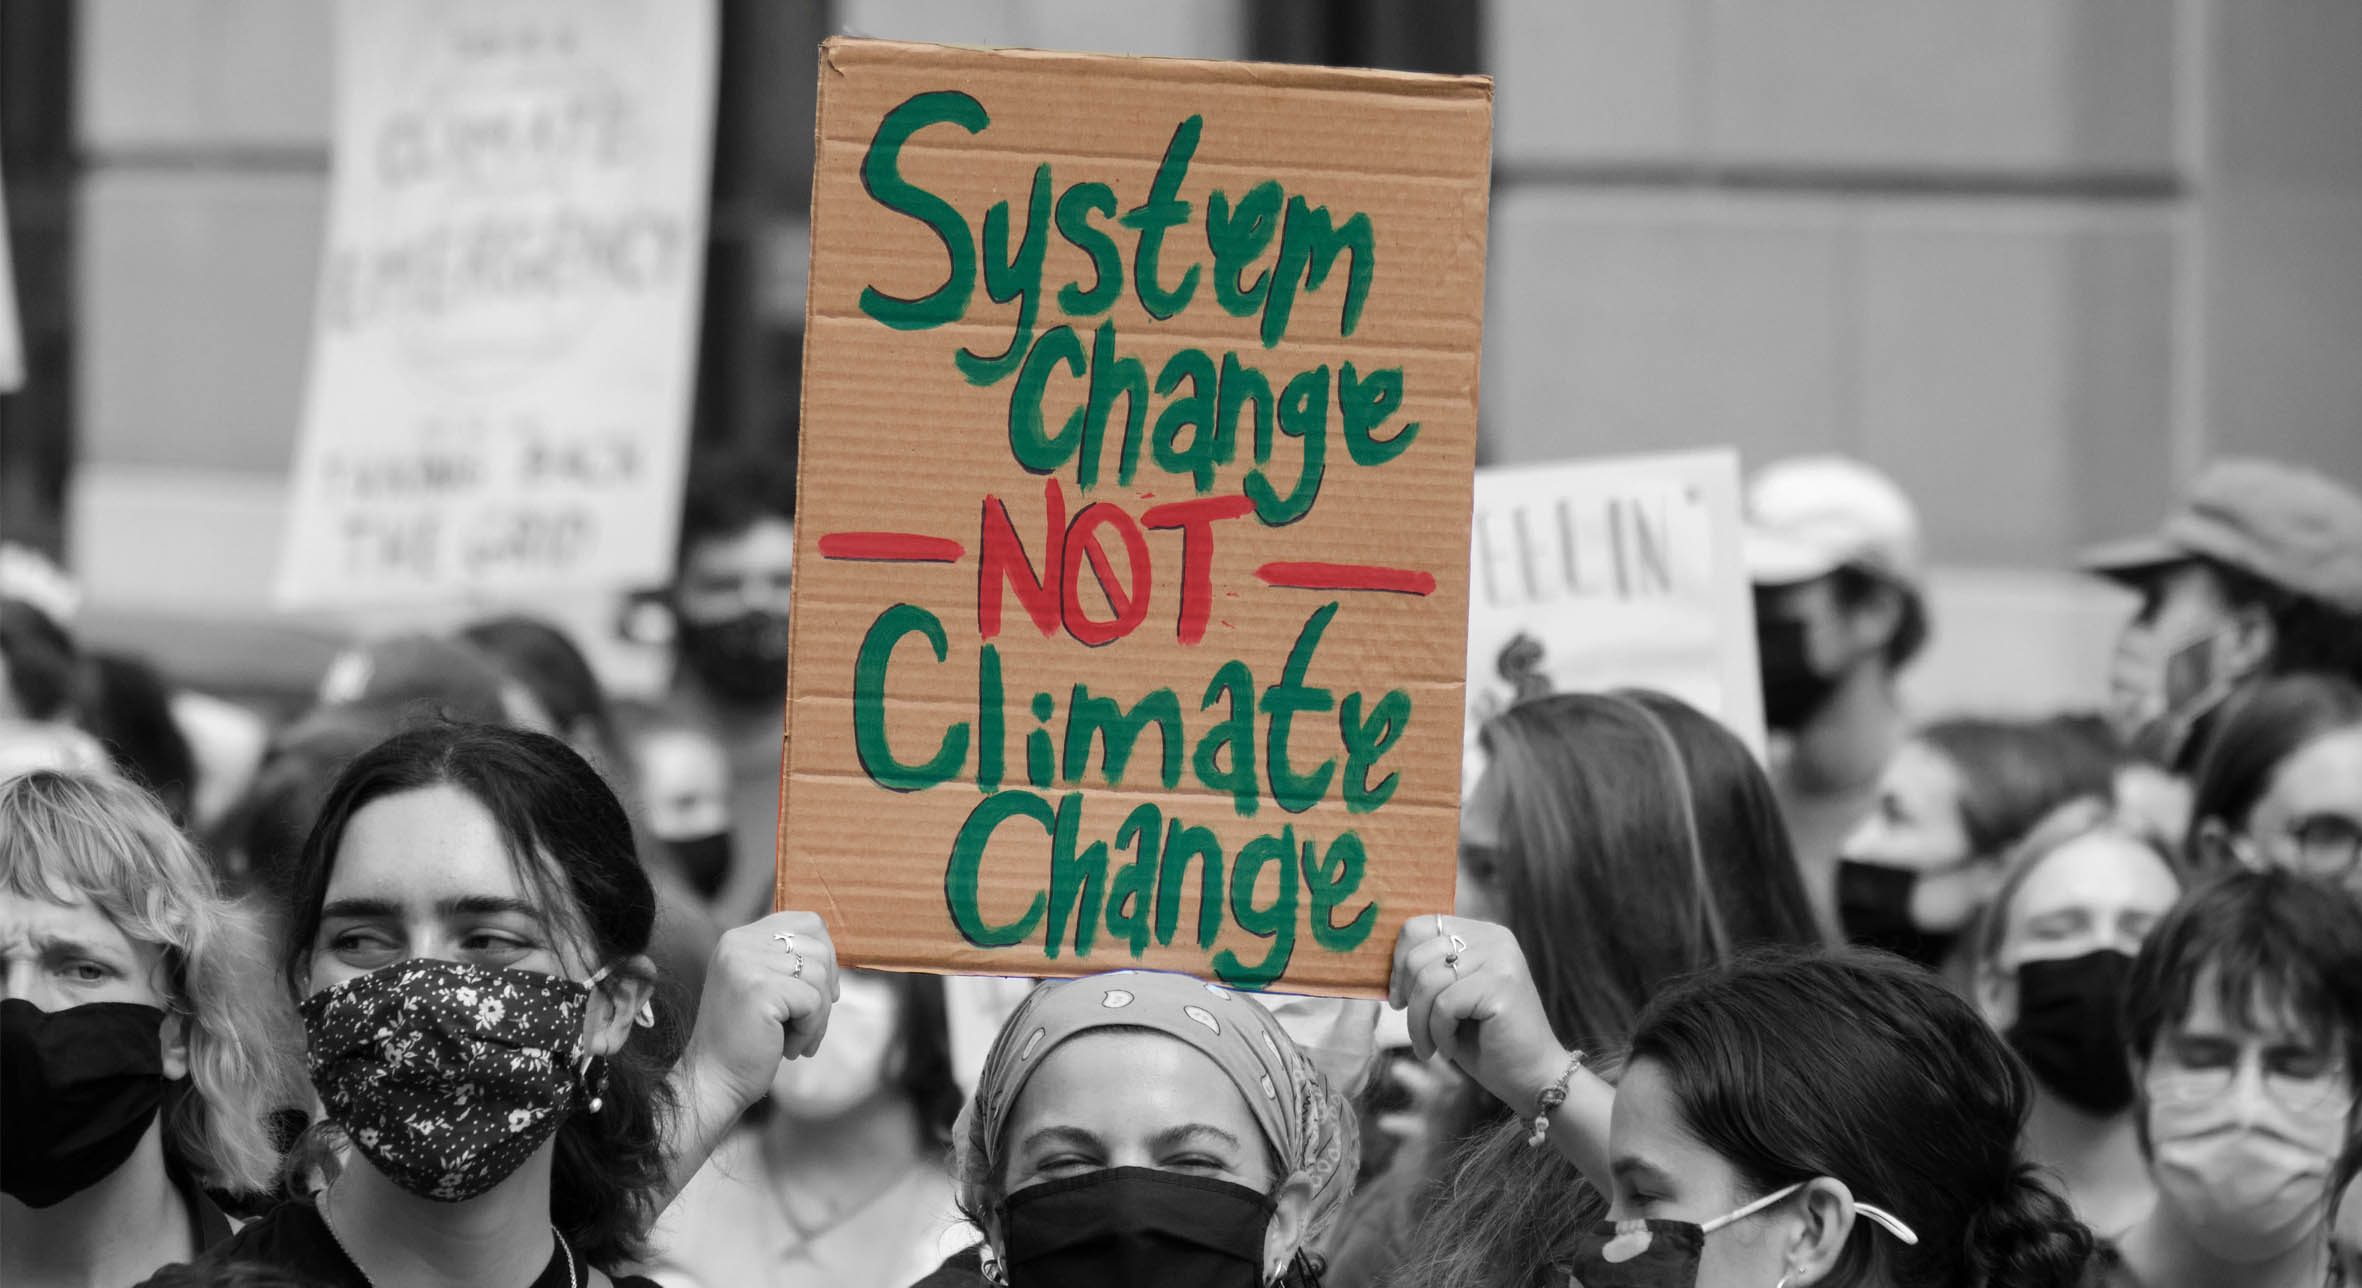 التمويل في كوب 27: انتصار ينتظر تغييرًا نظاميًا، فلننتزع جهود التغير المناخي من براثن الممولين - وائل جمال